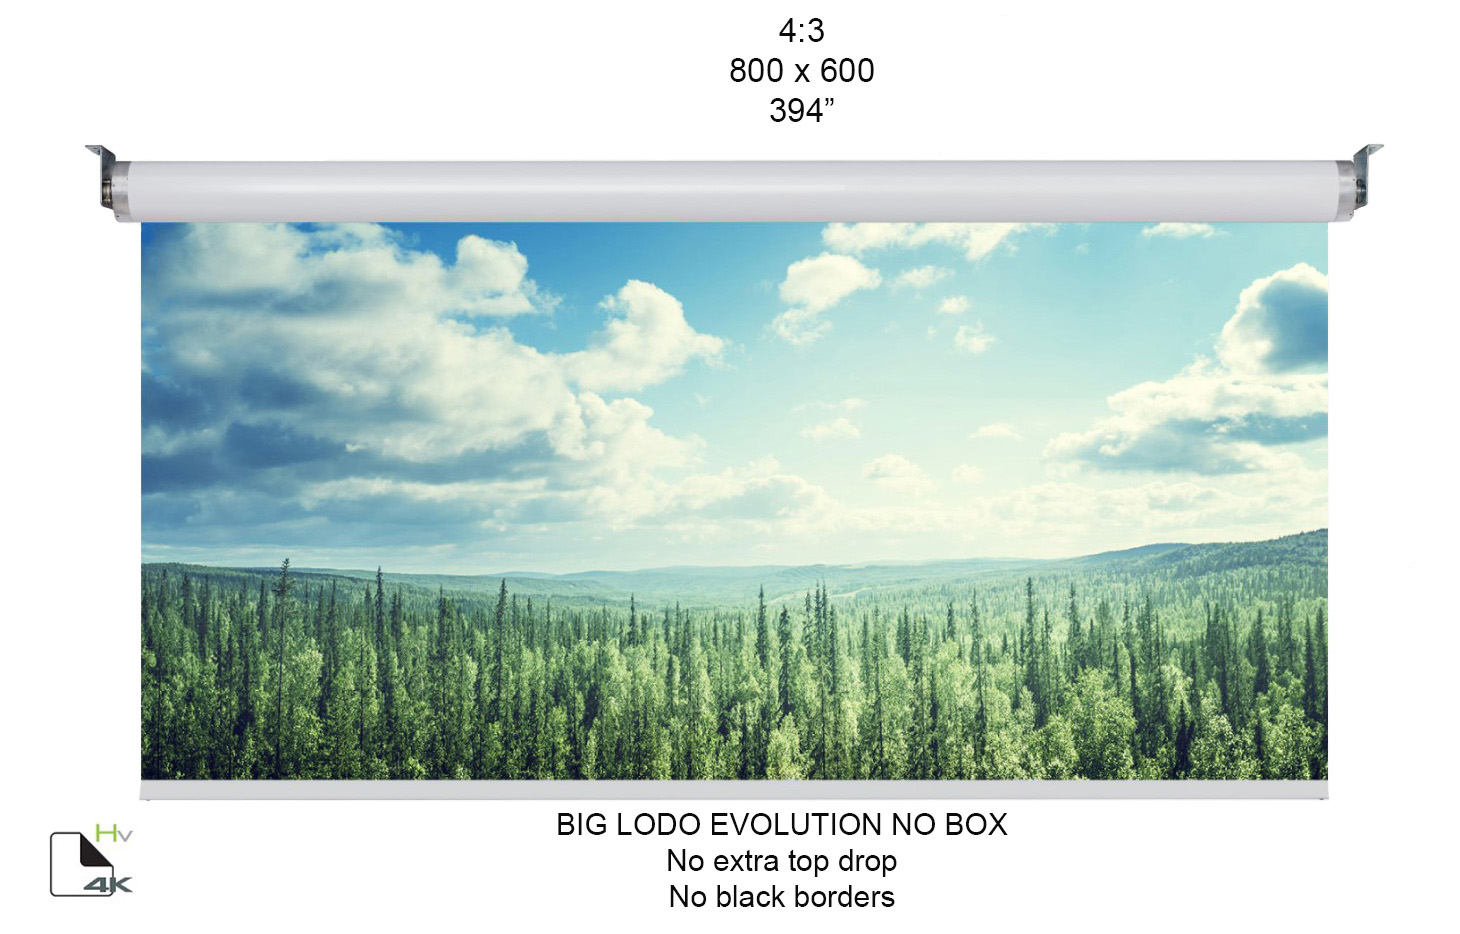 Ecran proiectie motorizat Screenline BIG LODO EVO NO BOX Home Vision, 800x600(394”), 4:3, alb, comutator perete